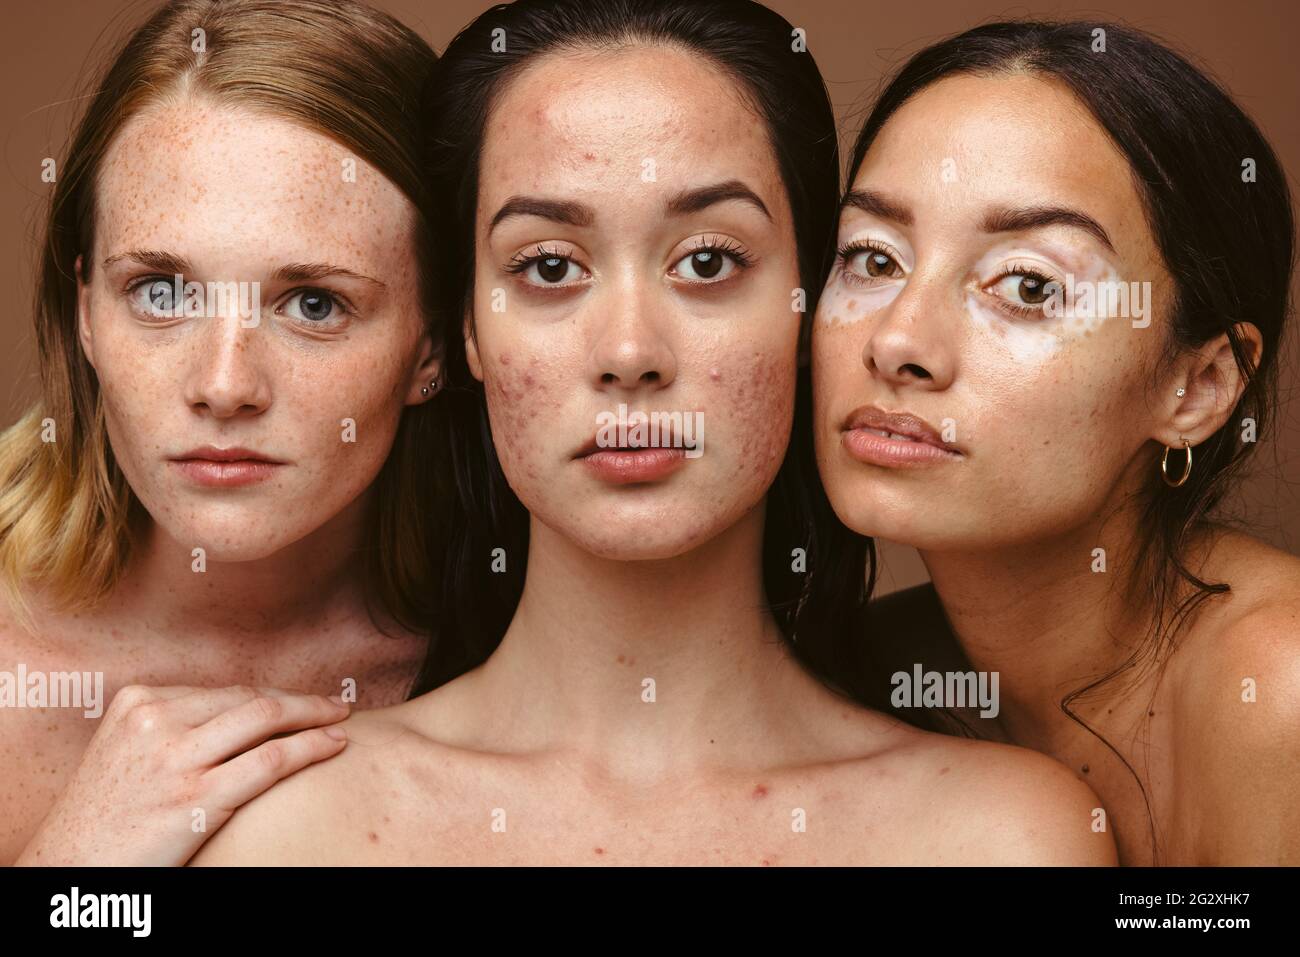 Nahaufnahme von drei starken Frauen, die zusammen Hautprobleme auf braunem Hintergrund haben. Junge Frauen mit verschiedenen Hautkrankheiten wie Sommersprossen, Akne und vi Stockfoto